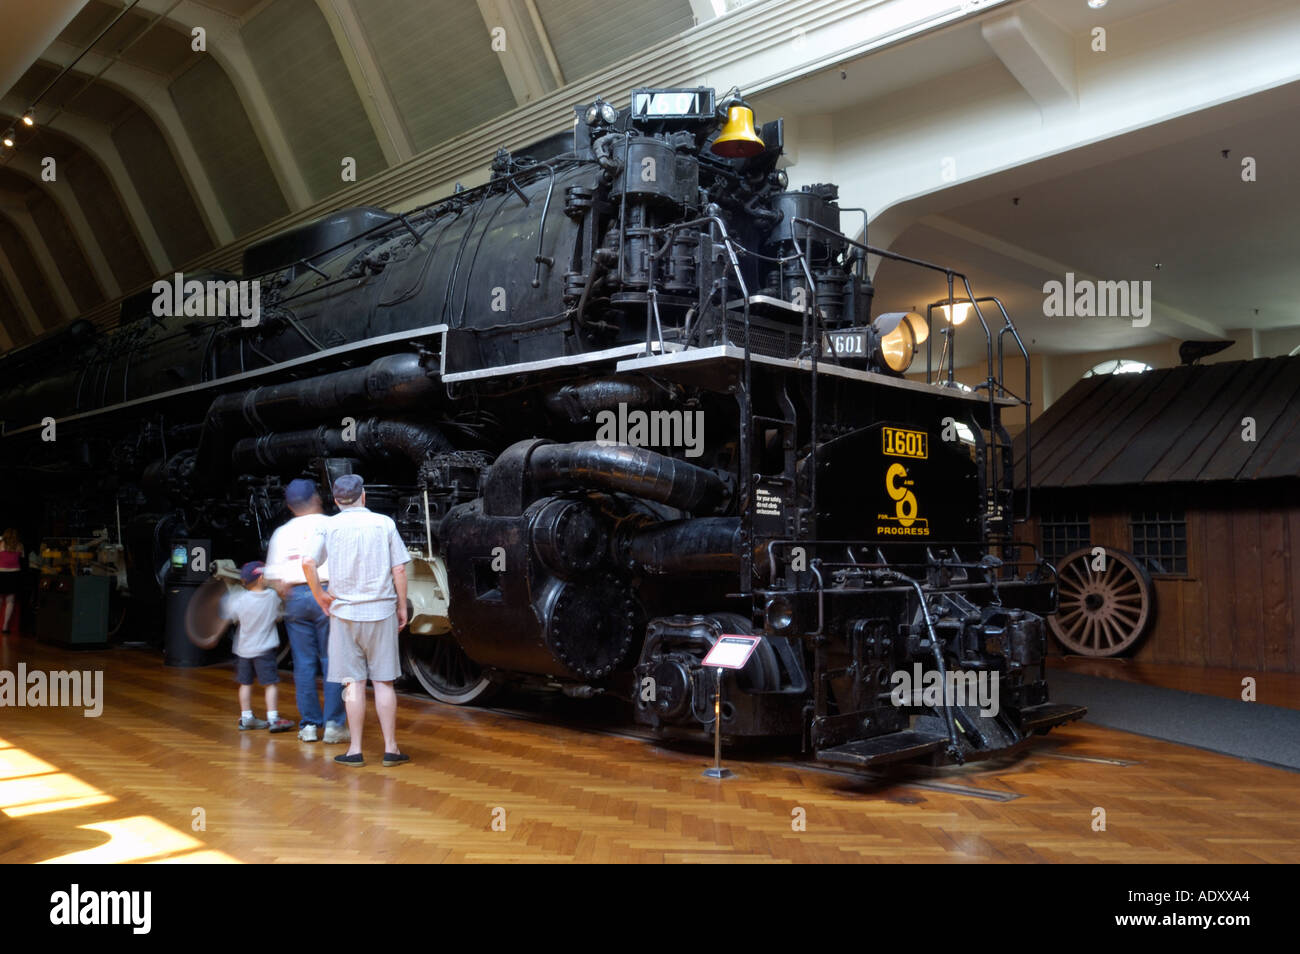 Allegheny locomotive à vapeur pesant 600 tonnes et construite en 1941 exposée au musée Henry Ford à Dearborn Michigan Banque D'Images